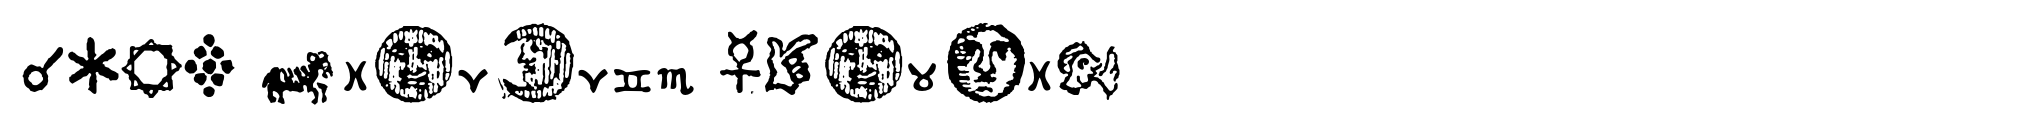 1689 Almanach Symbols image